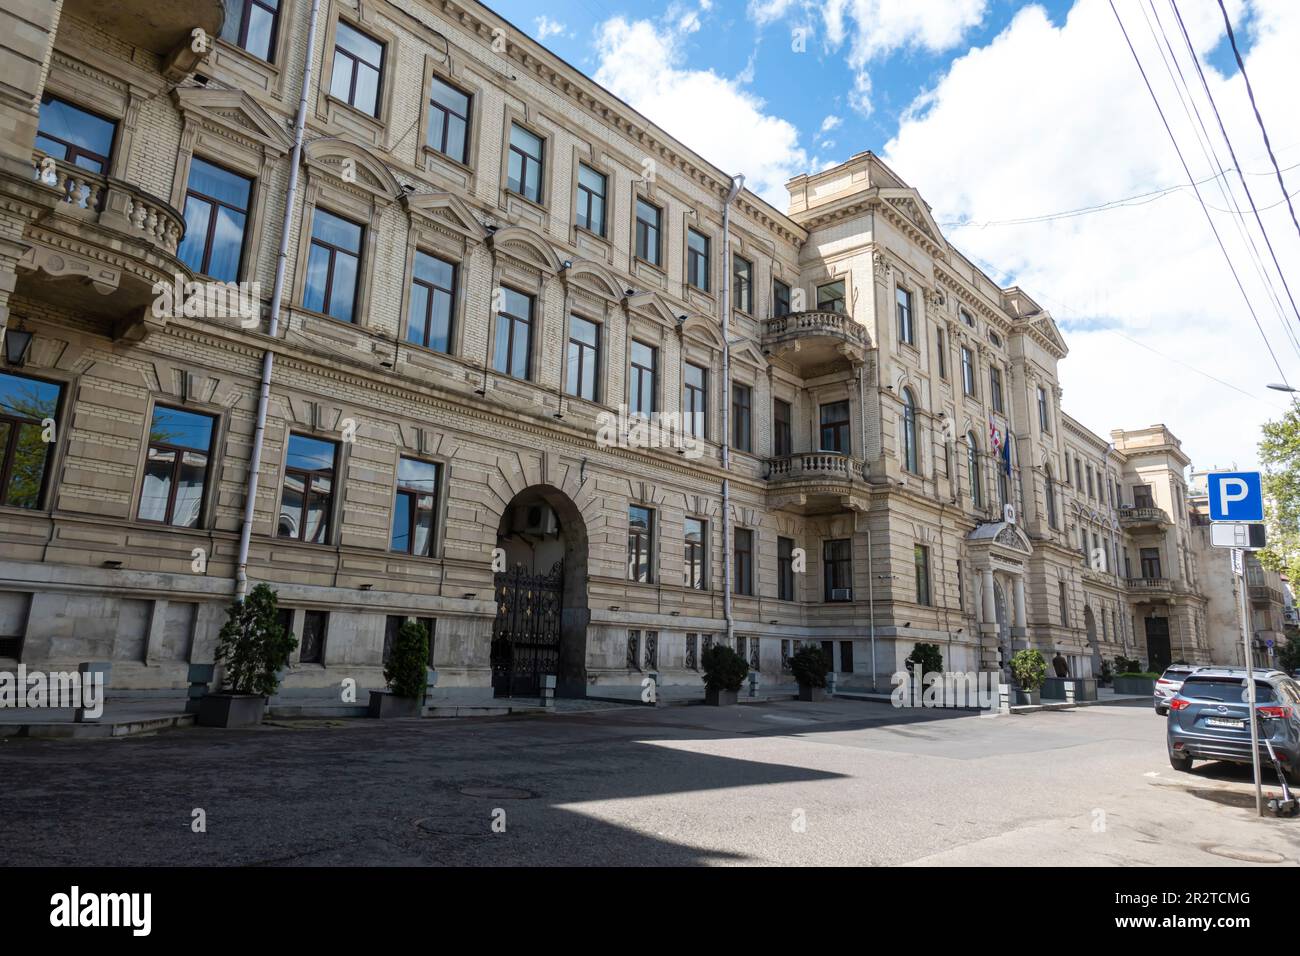 Le Palais de Justice, un bâtiment de la Cour suprême à Tbilissi, l'architecte Aleksander Szymkiewicz. Tbilissi Géorgie Banque D'Images